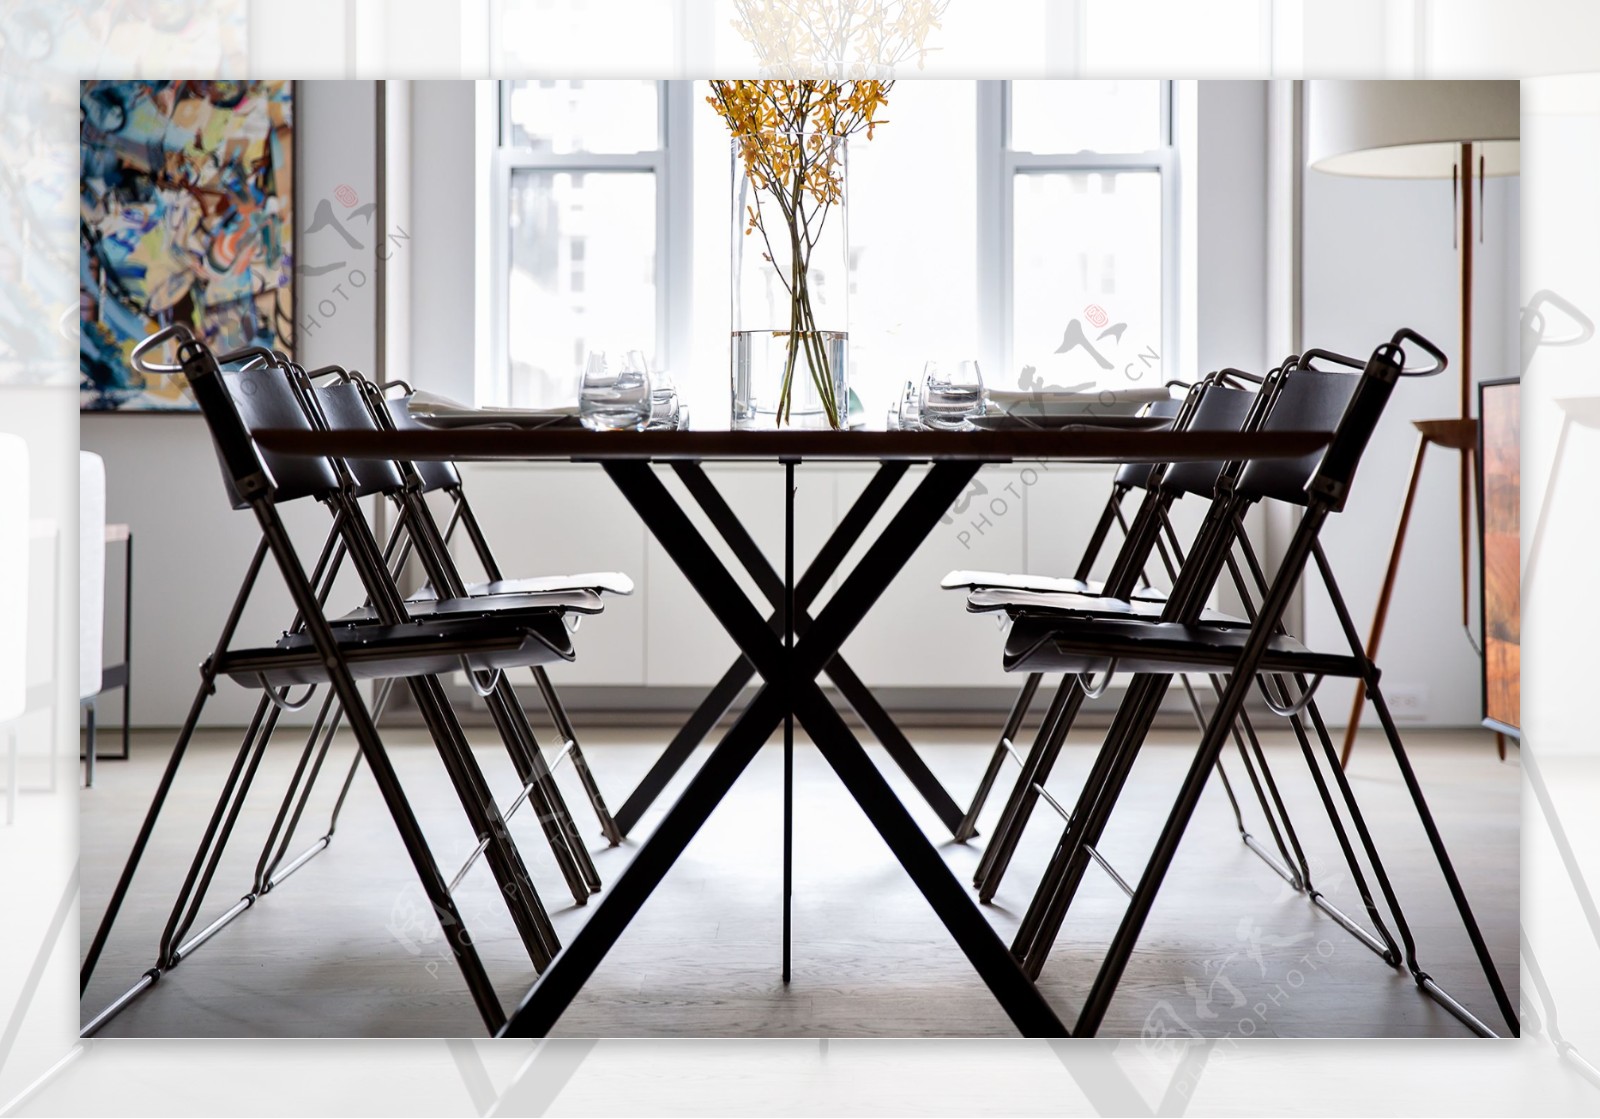 美式简约餐厅装修餐桌设计效果图